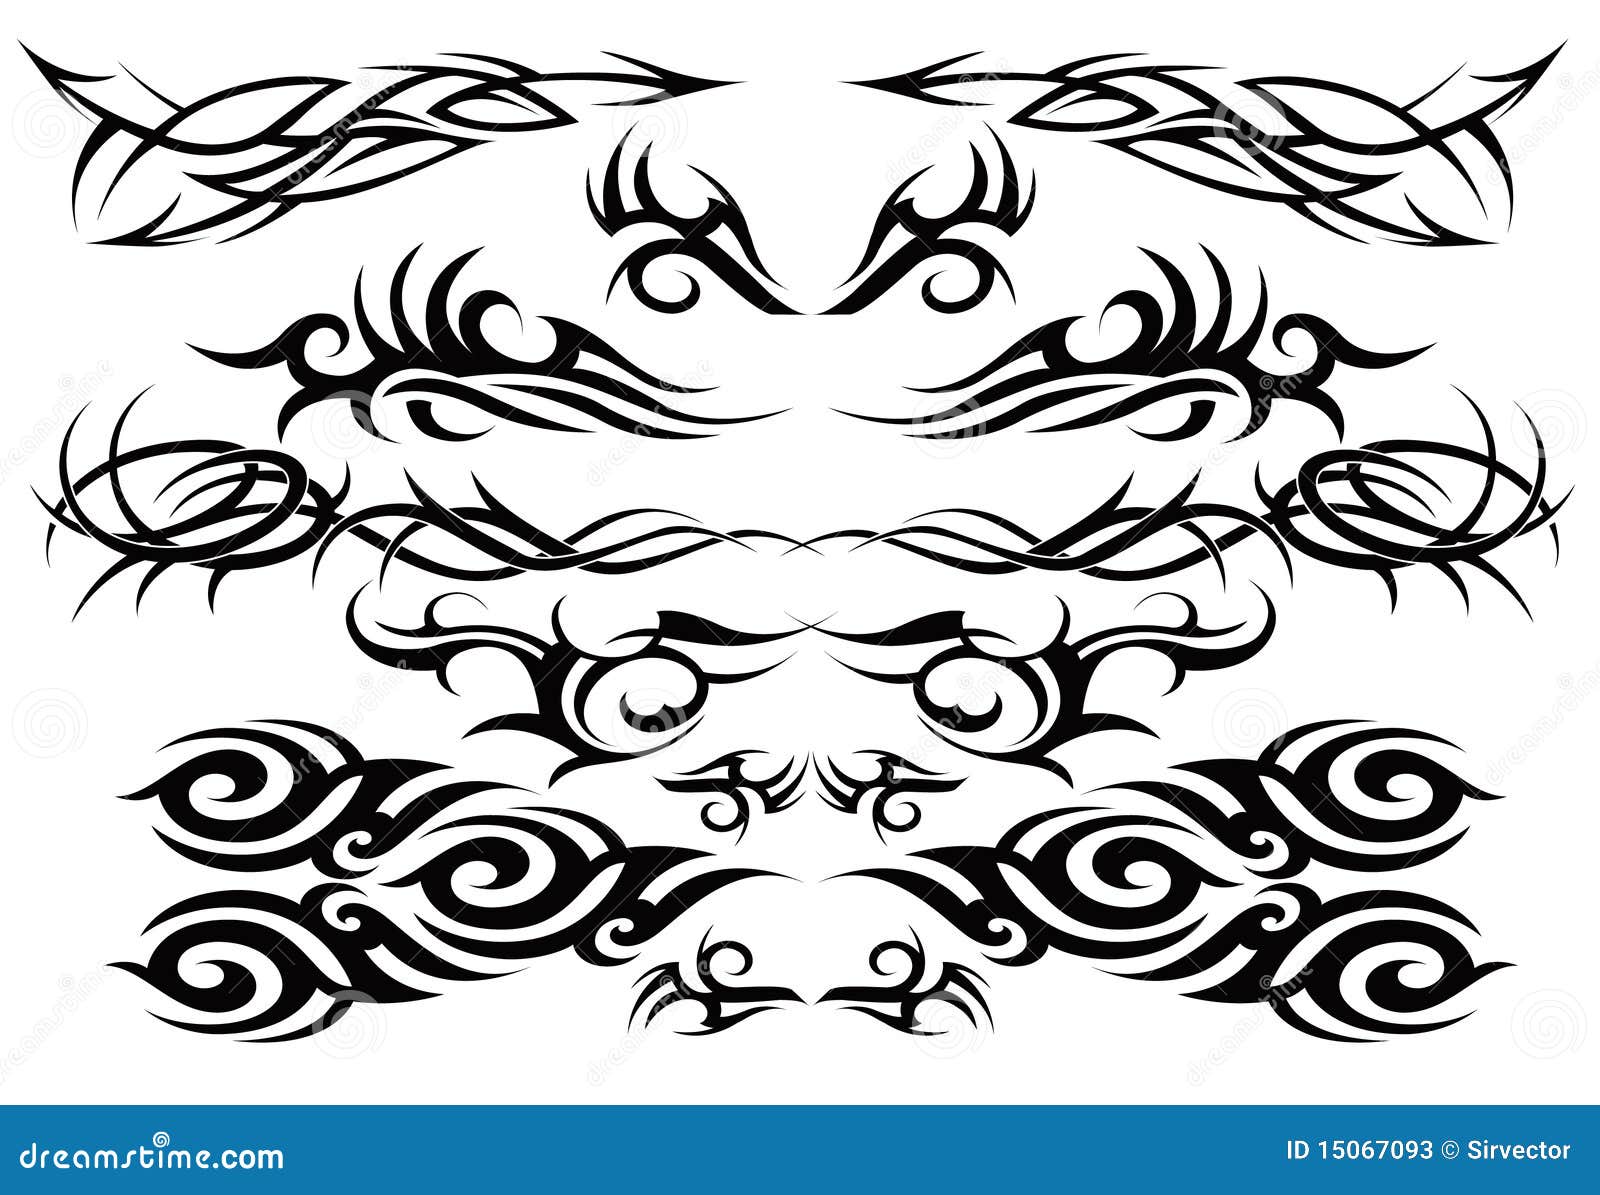 Tribal Tattoo Design Stock Illustrations RoyaltyFree Vector Graphics   Clip Art  iStock  Tribal tattoo design vector